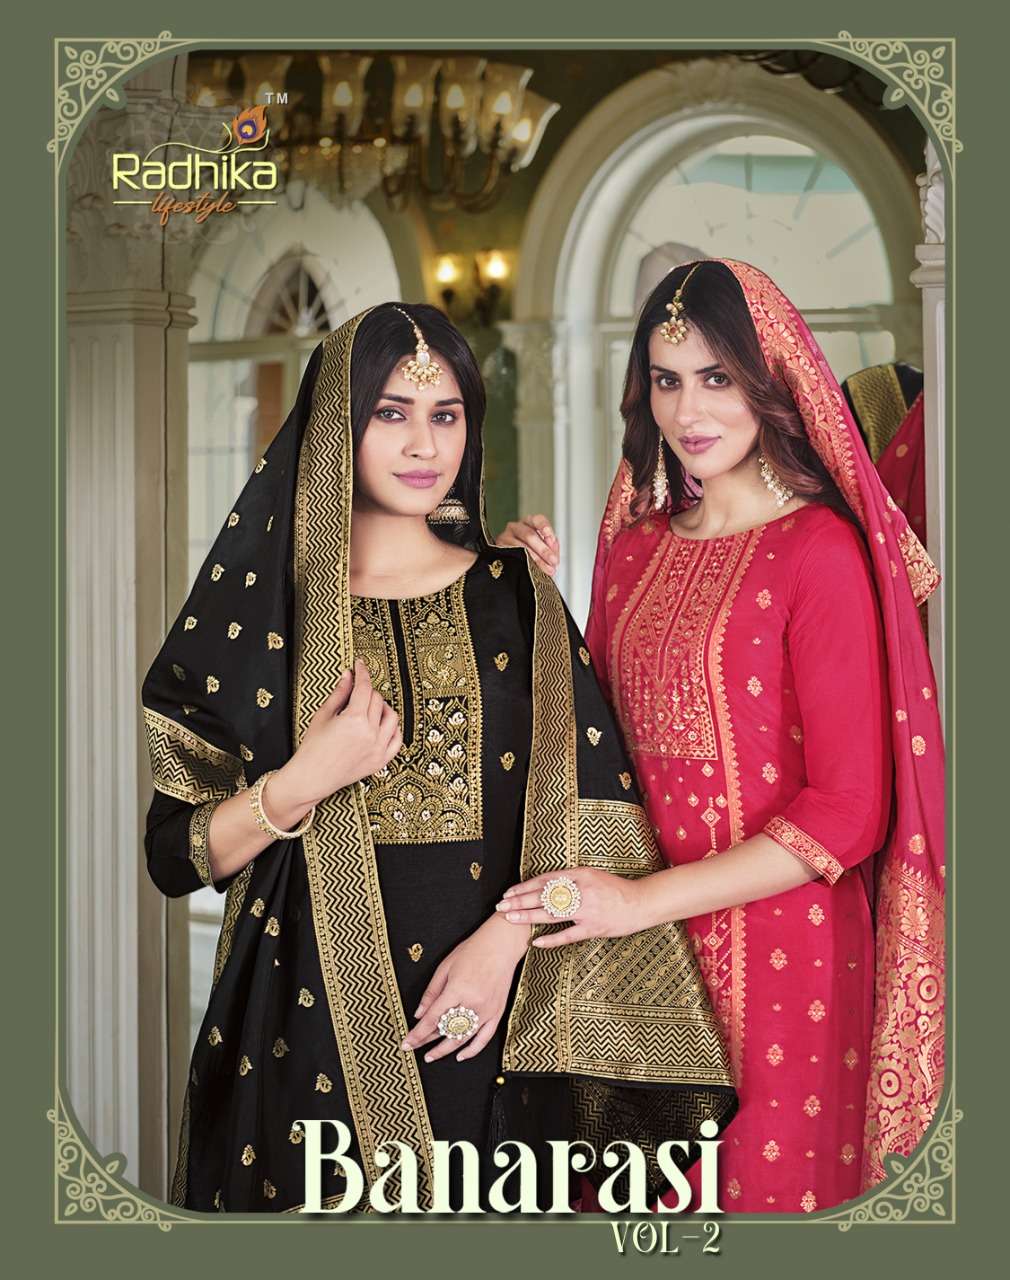 Banarasi Vol 2 Buy Radhika Lifestyle Wholesale Banarasi Fabric Lowest Price Kurtis Set